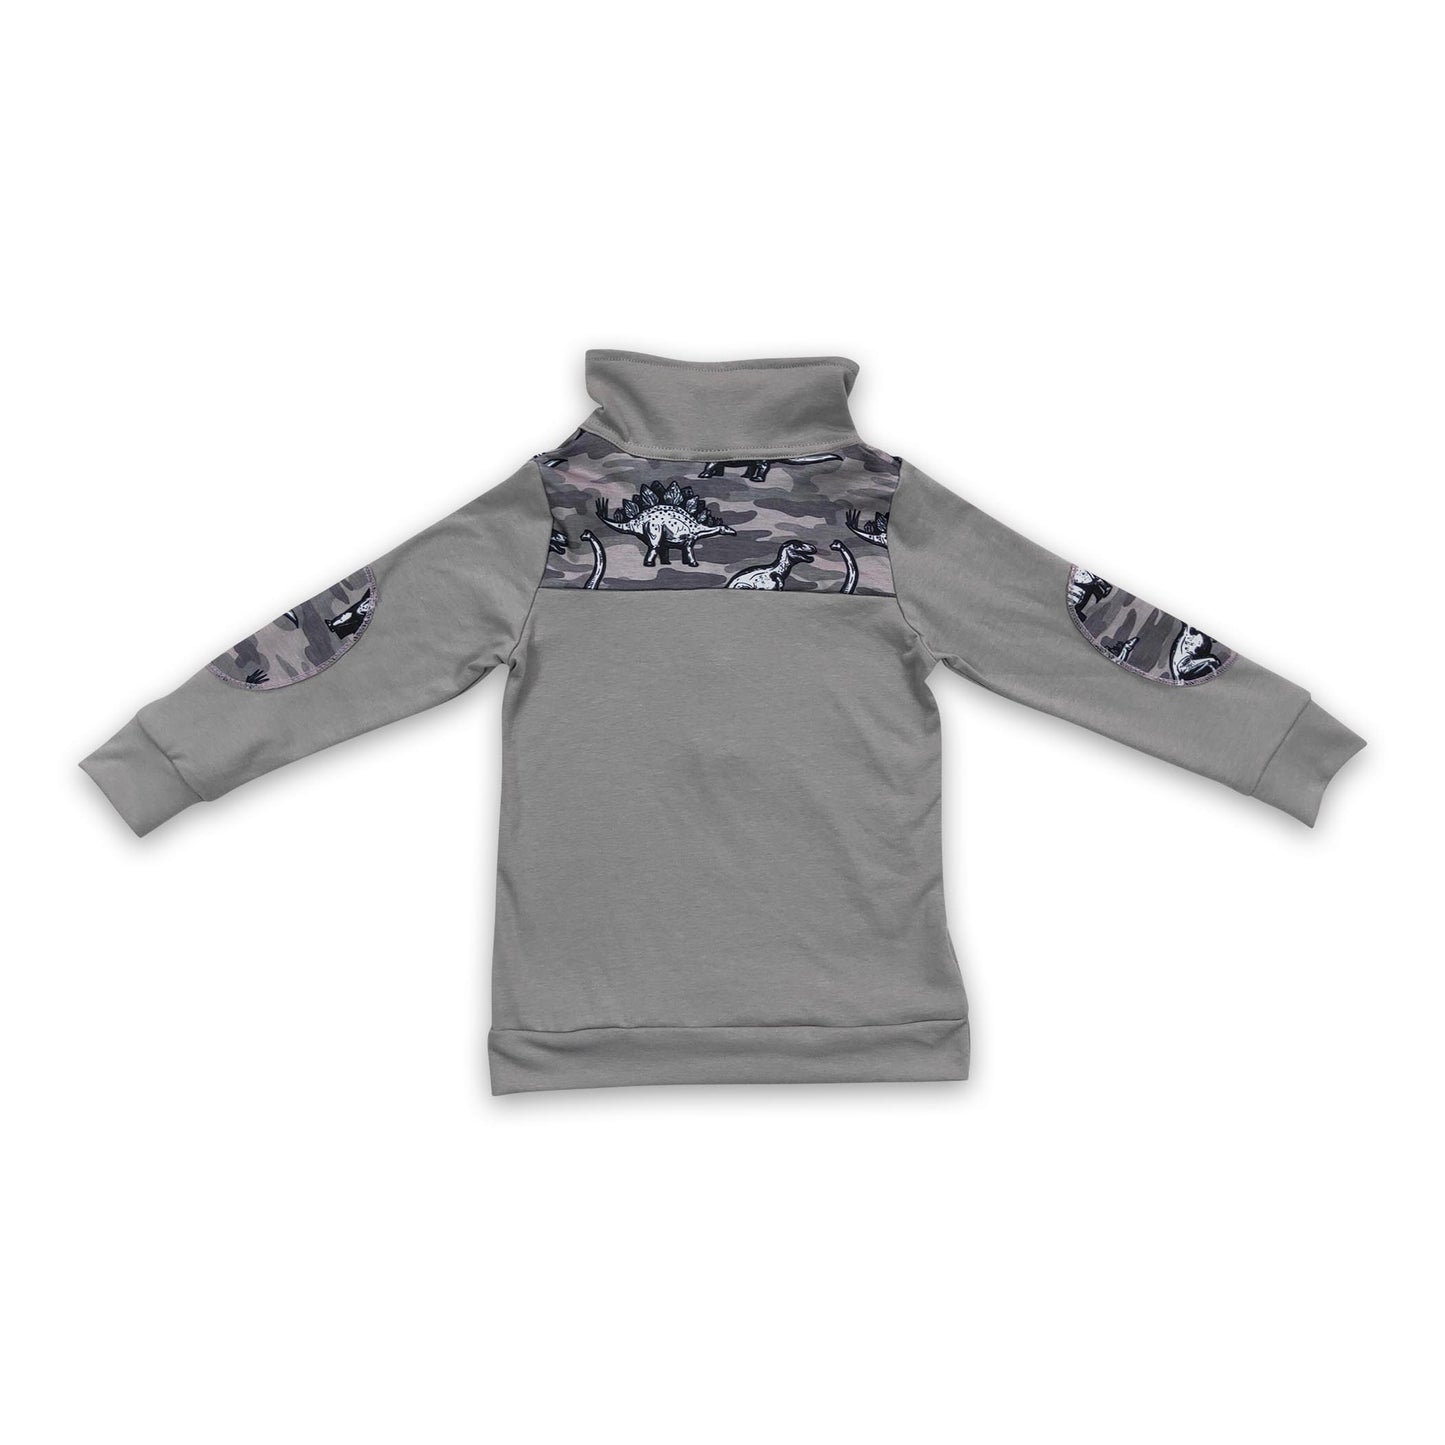 Dino camo grey long sleeves zipper pullover